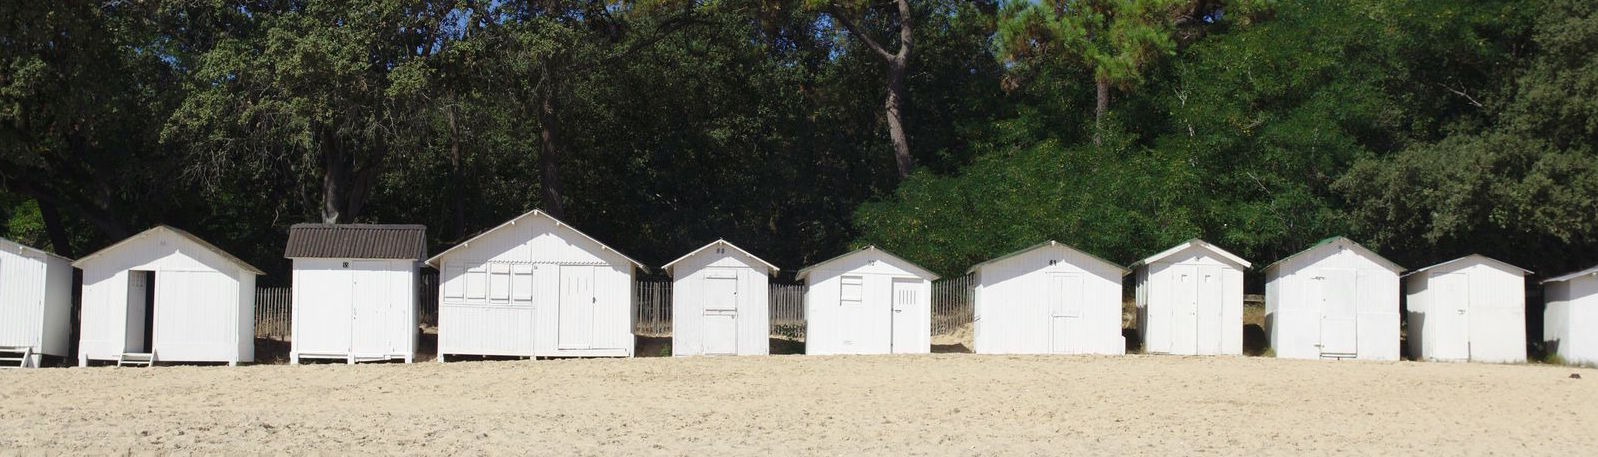 cabanes de plage sur l'île de noirmoutier